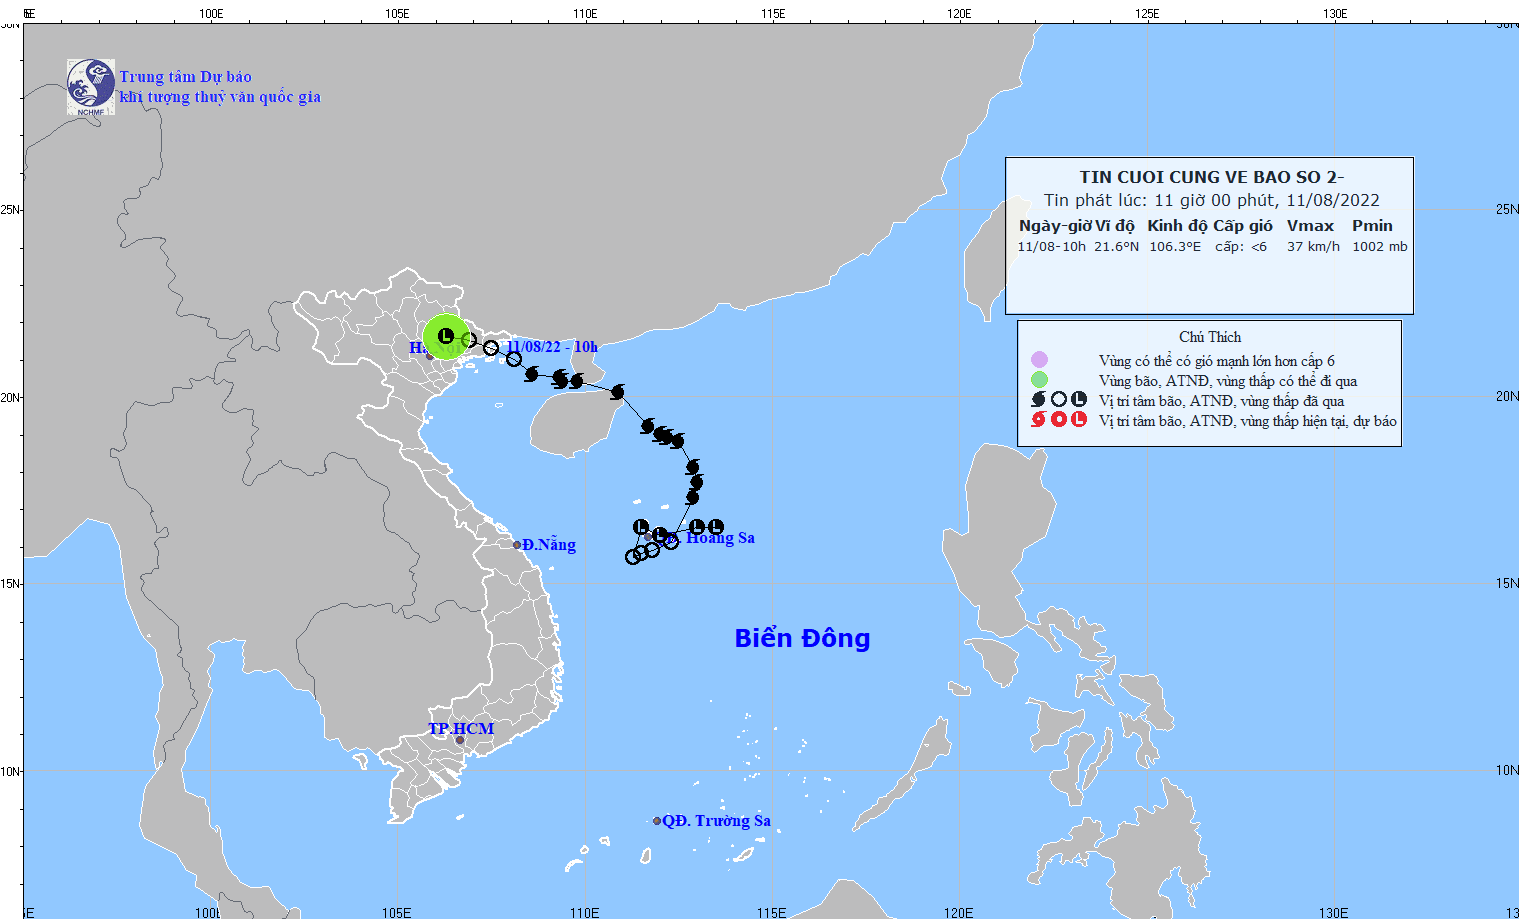 Tin cuối cùng về bão số 2: Hà Nội mưa to; mưa lớn ở Bắc Bộ, Thanh Hóa và Nghệ An diễn biến phức tạp